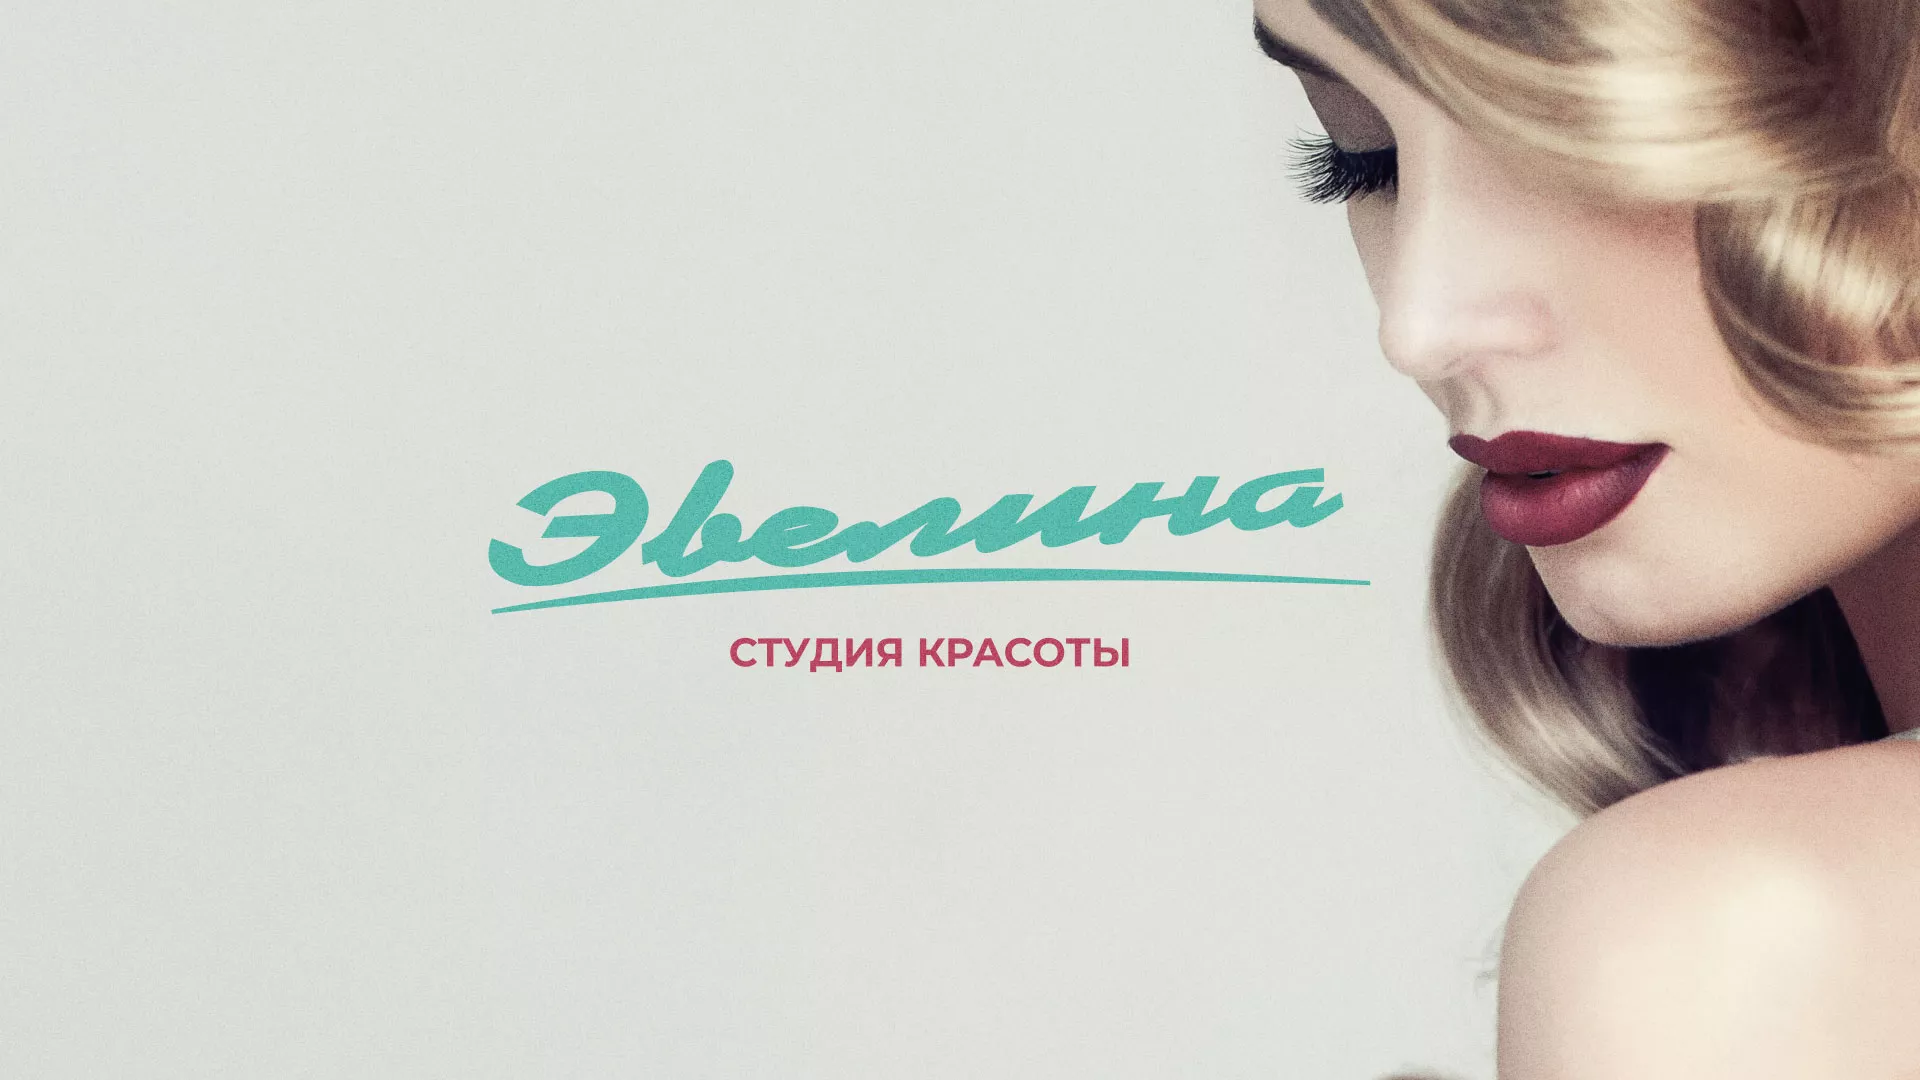 Разработка сайта для салона красоты «Эвелина» в Зернограде